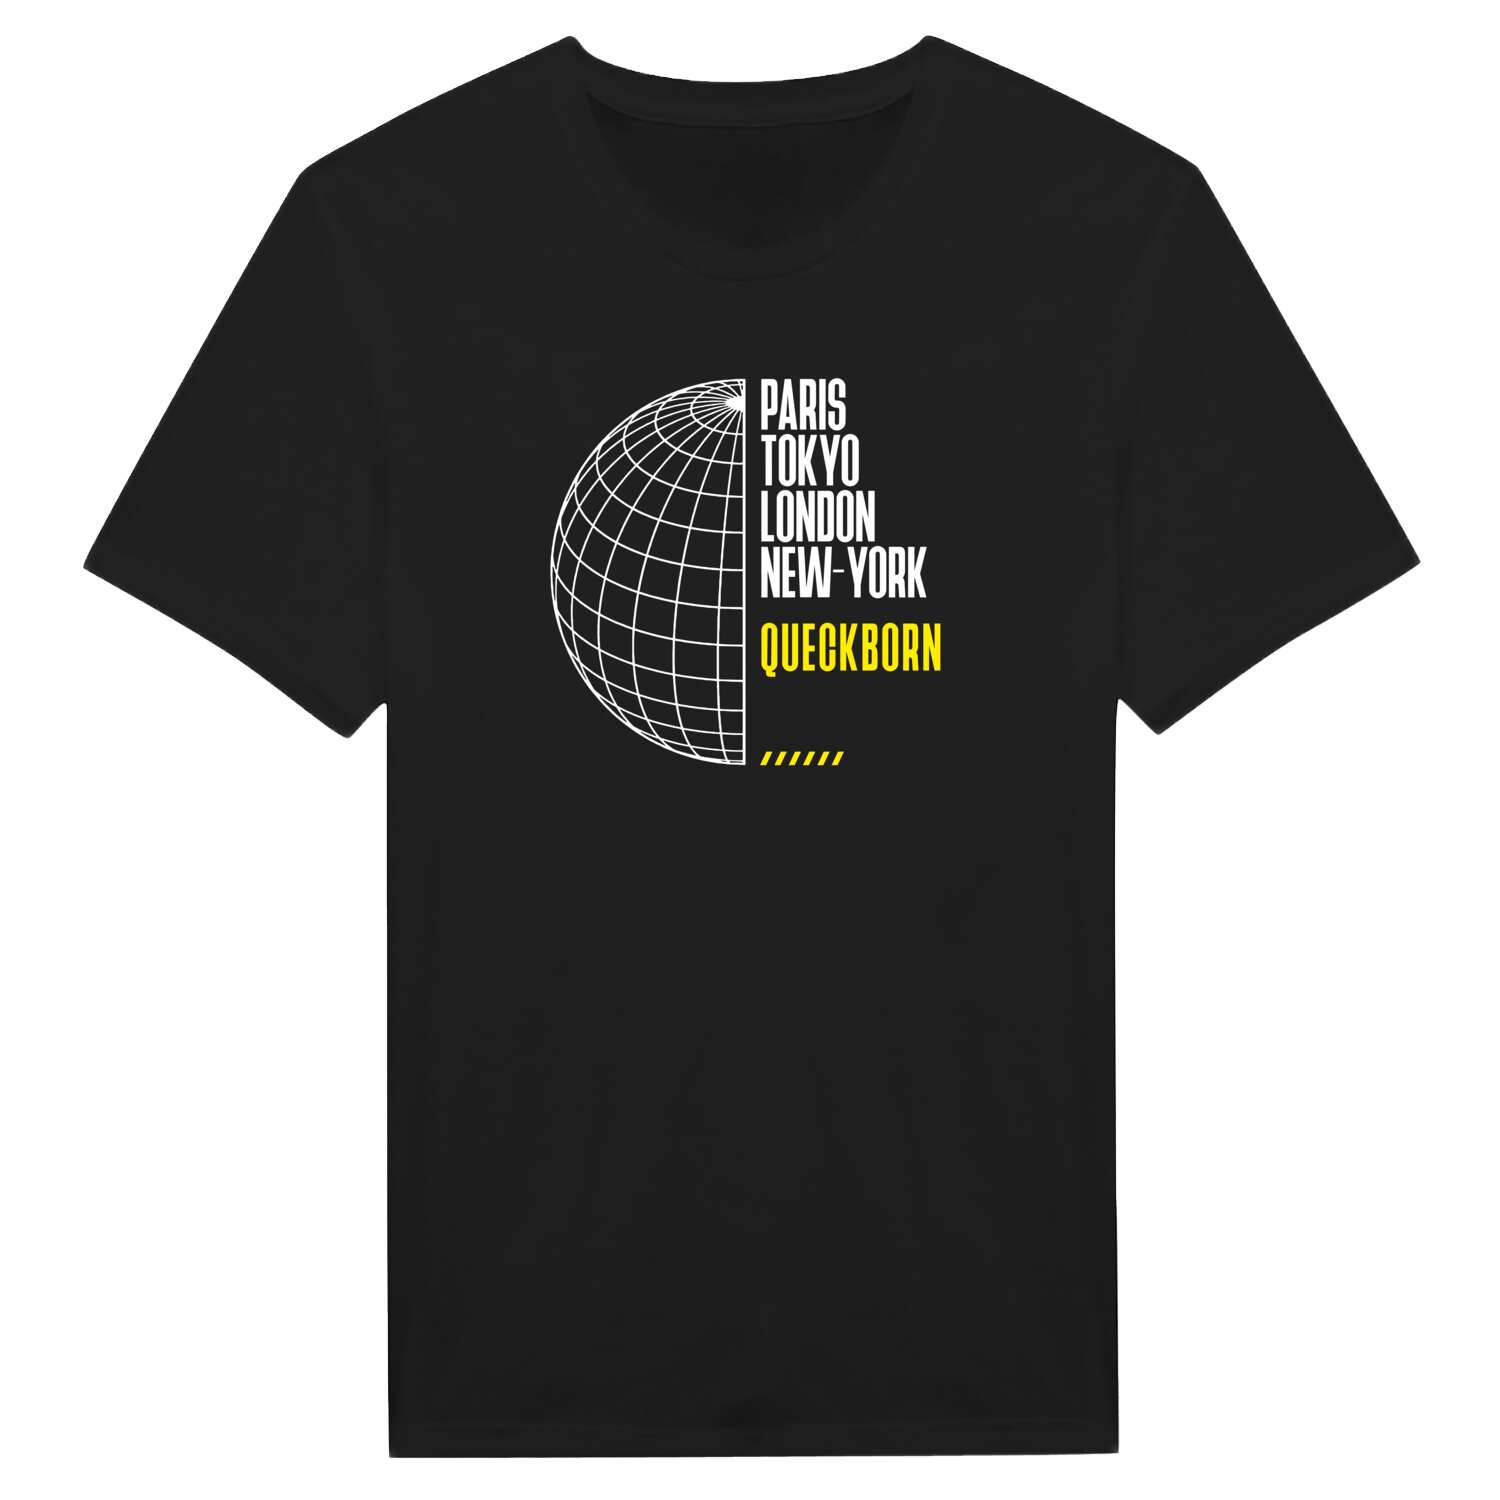 Queckborn T-Shirt »Paris Tokyo London«